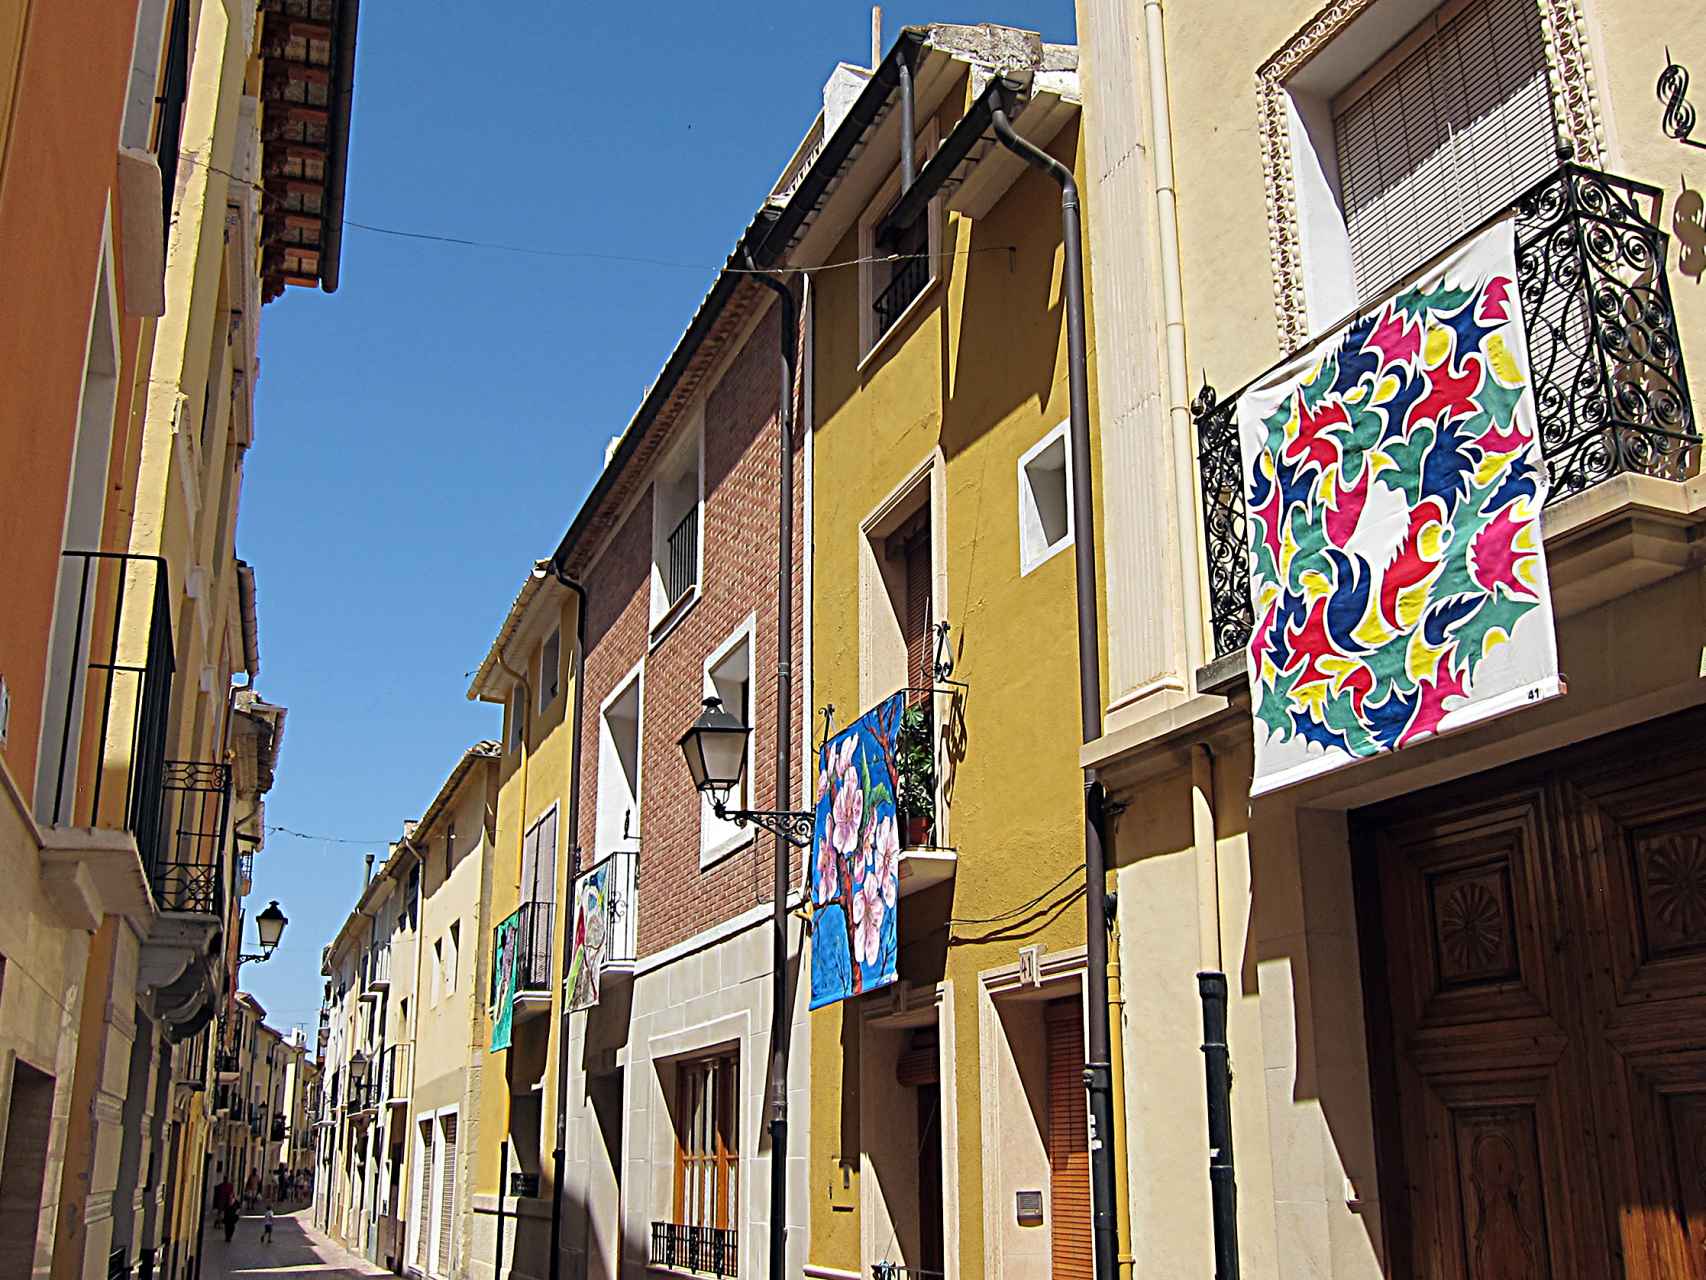 Calle del pueblo adornada con los lienzos.